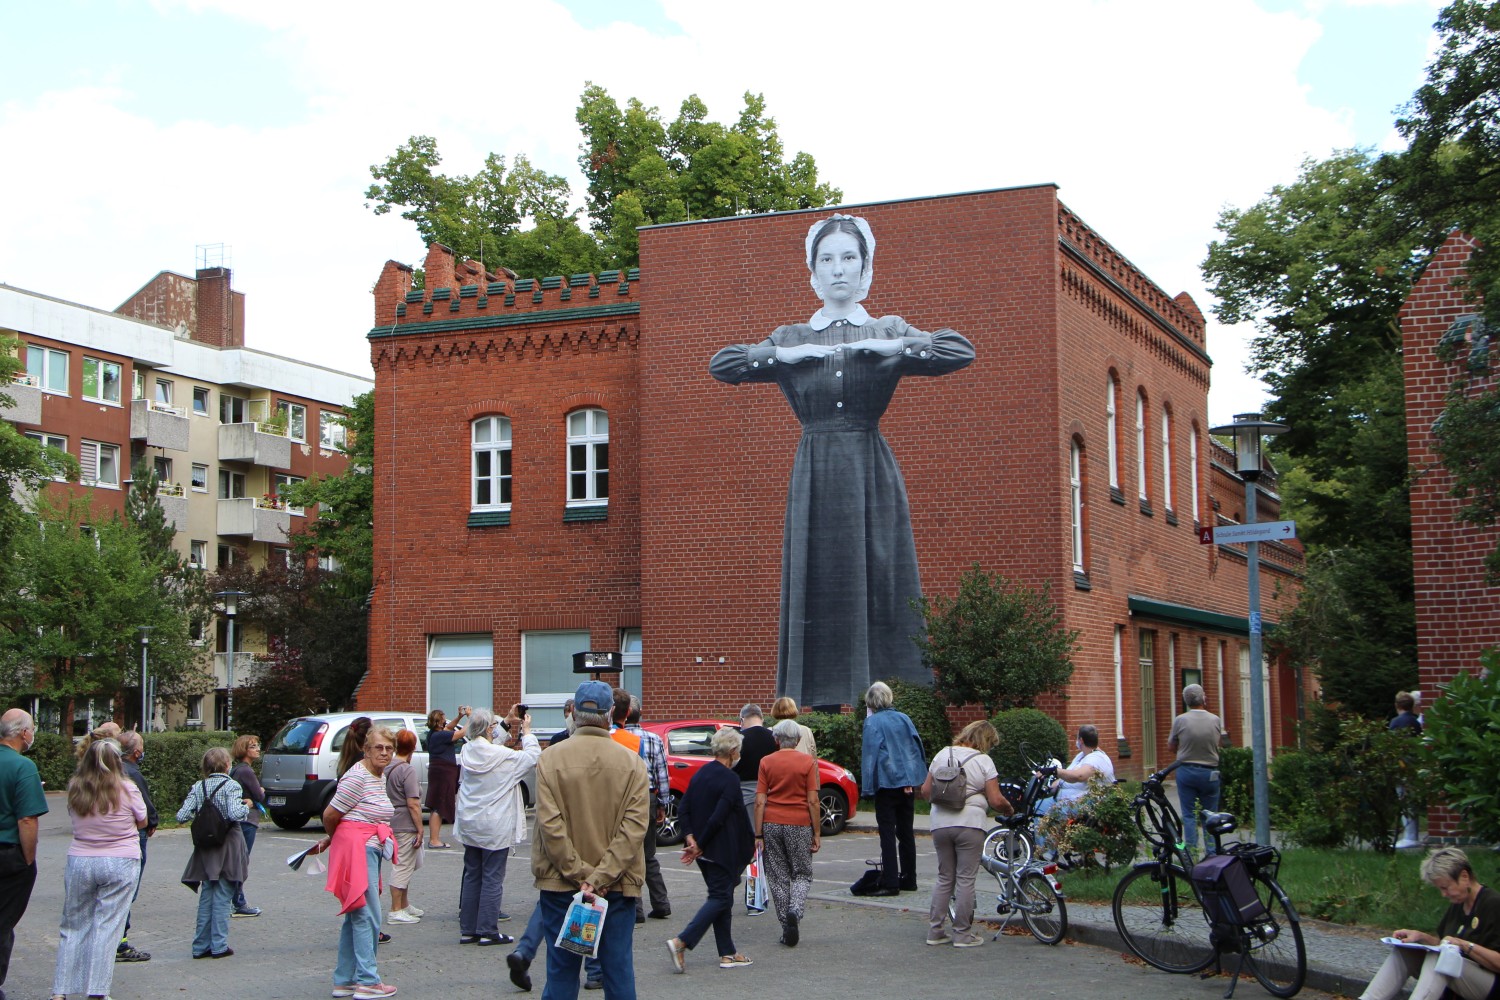 Eine Menschenmenge steht vor einem Gebäude. Auf der Hauswand ist eine Klosterfrau mit vor der Brust haltenden Unterarmen zu sehen.